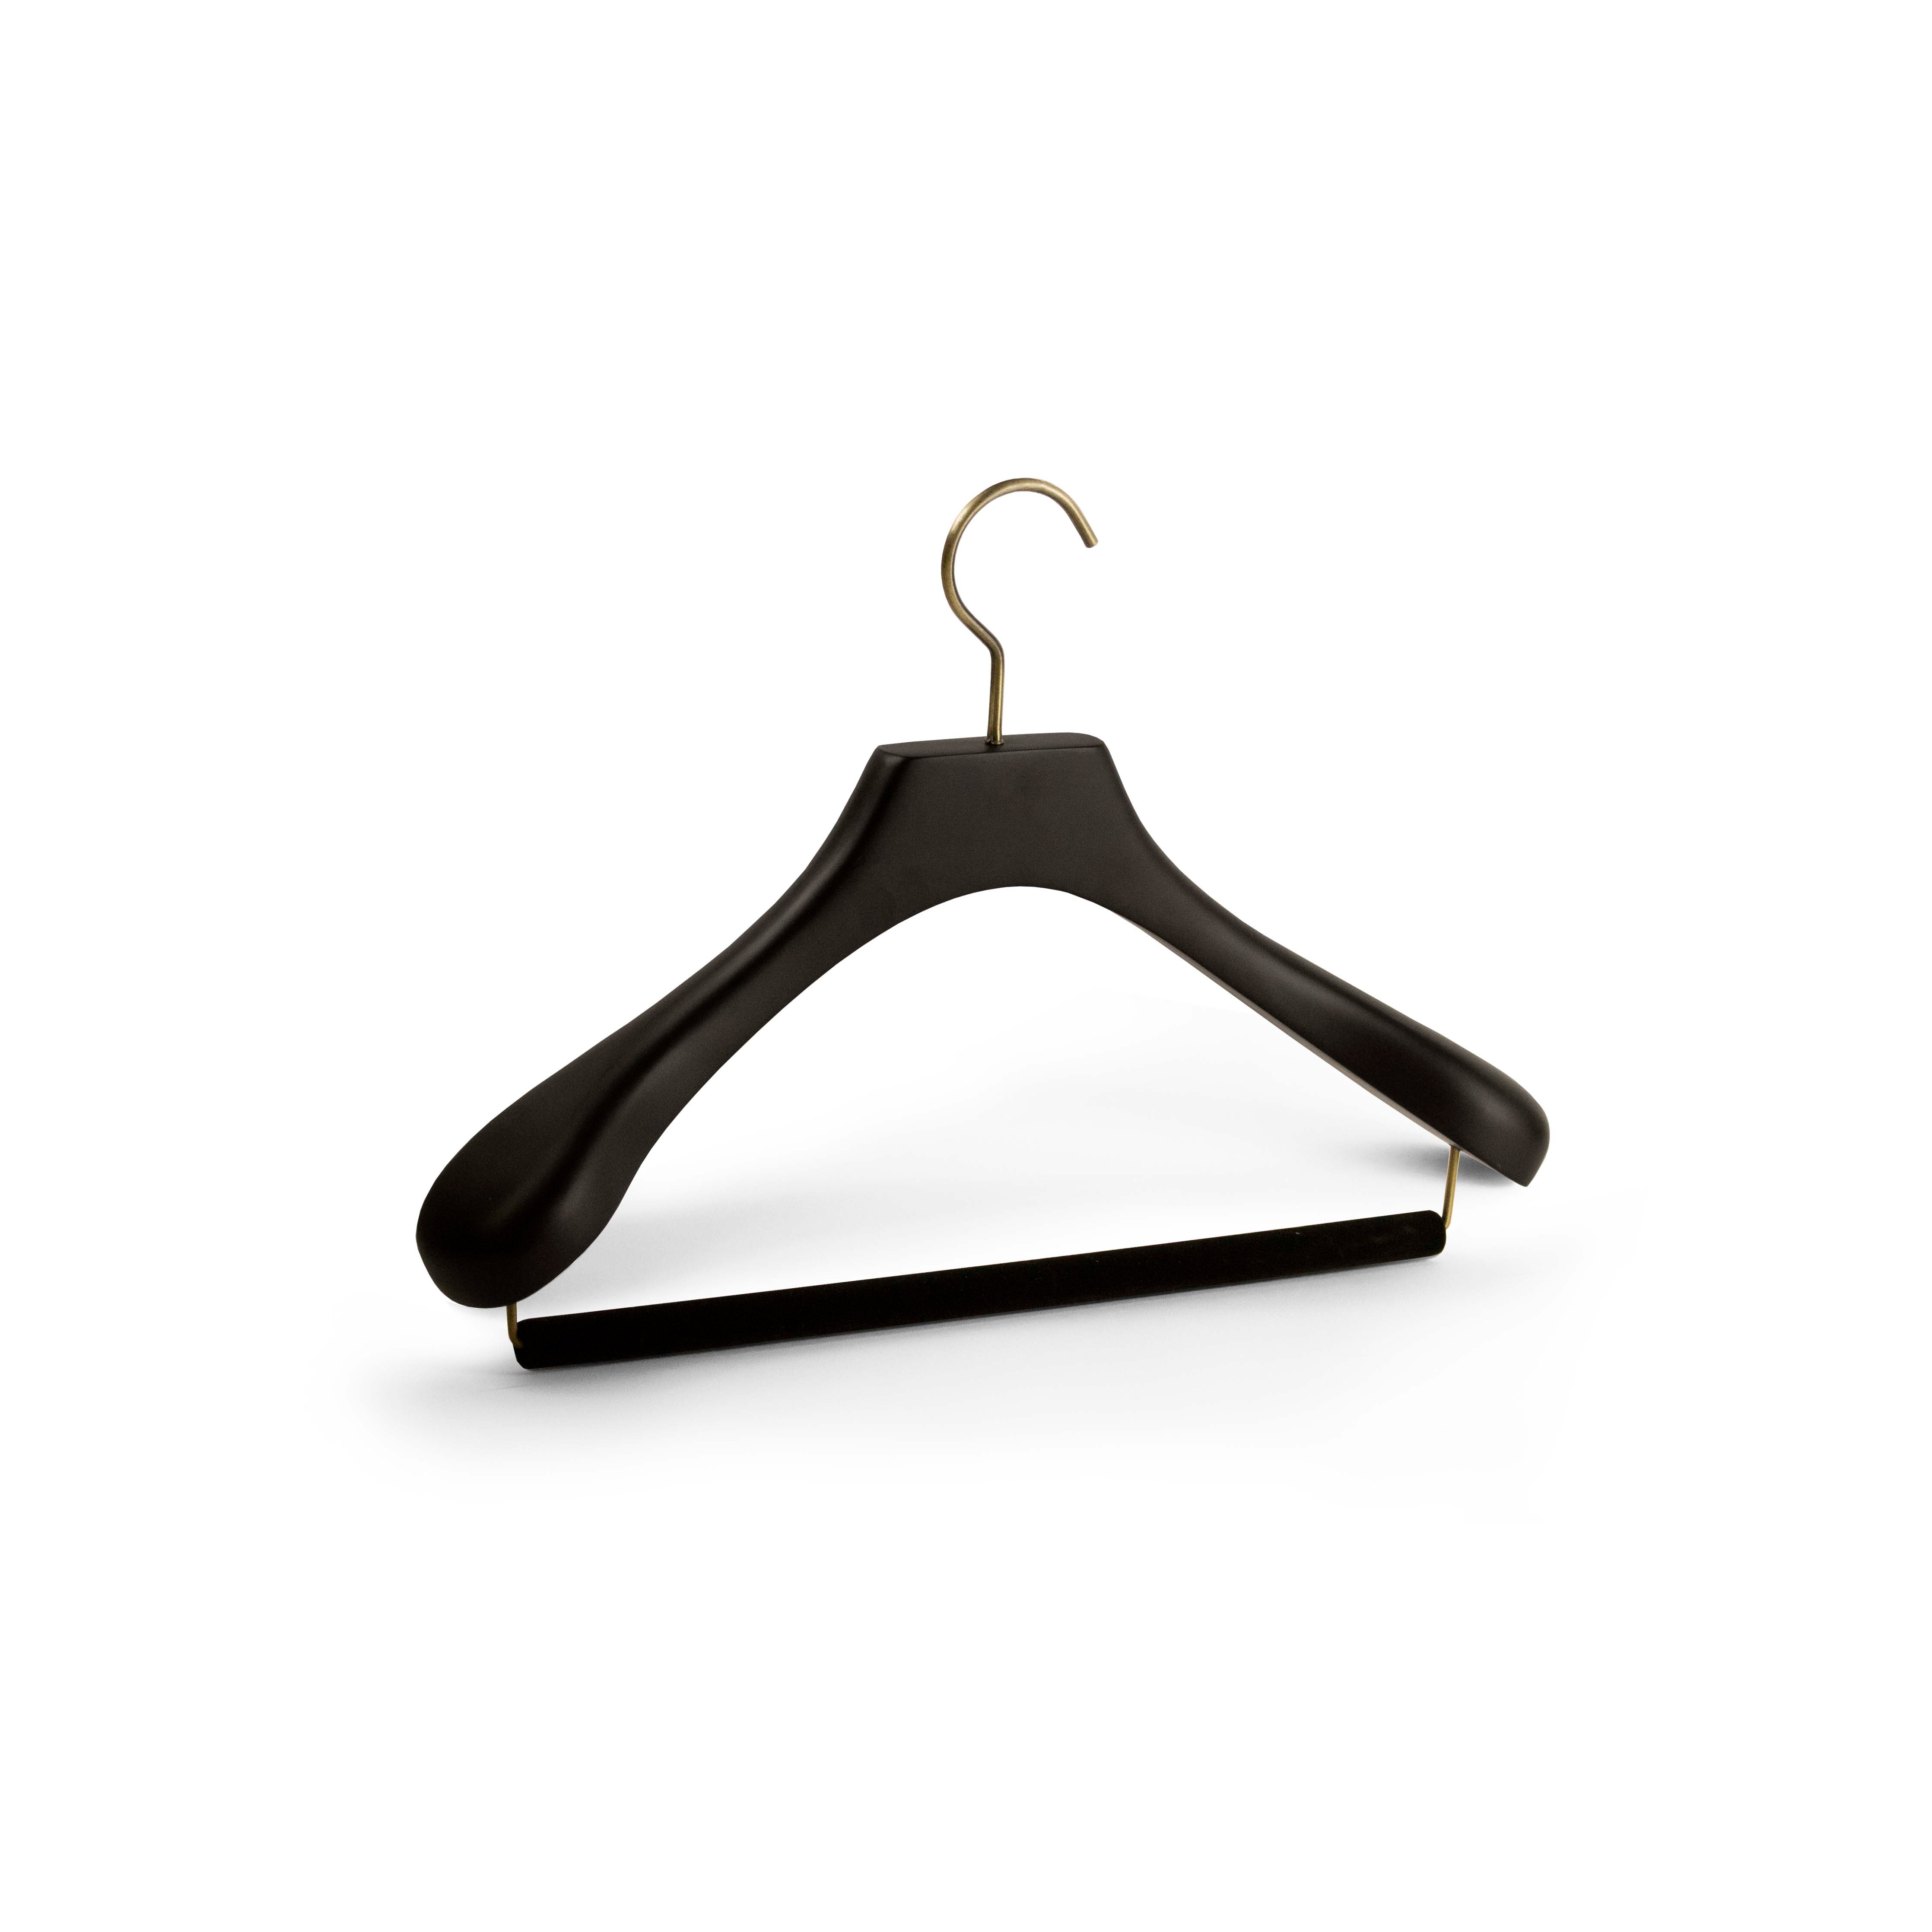 Nakata AUT-03 Luxury Suit Hanger | Arterton London